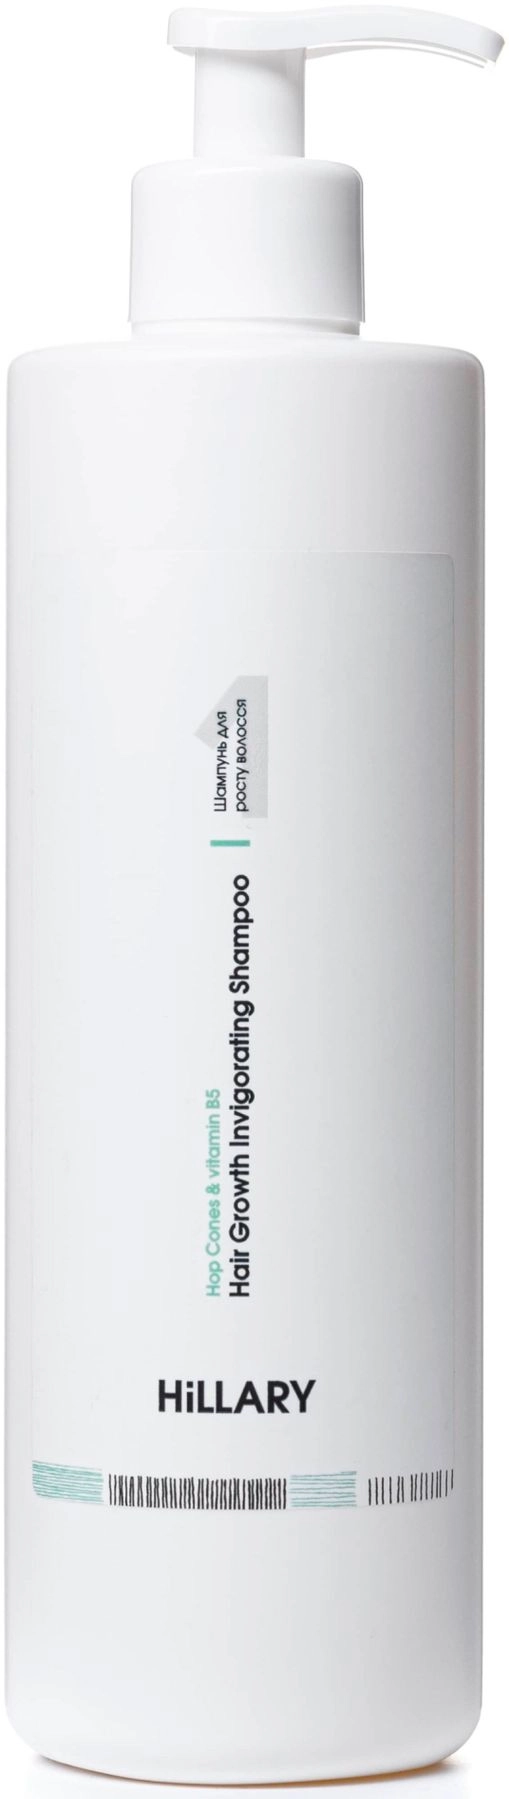 Шампунь проти випадіння волосся - Hillary Serenoa & РР Hair Loss Control Shampoo, 250 мл - фото N1